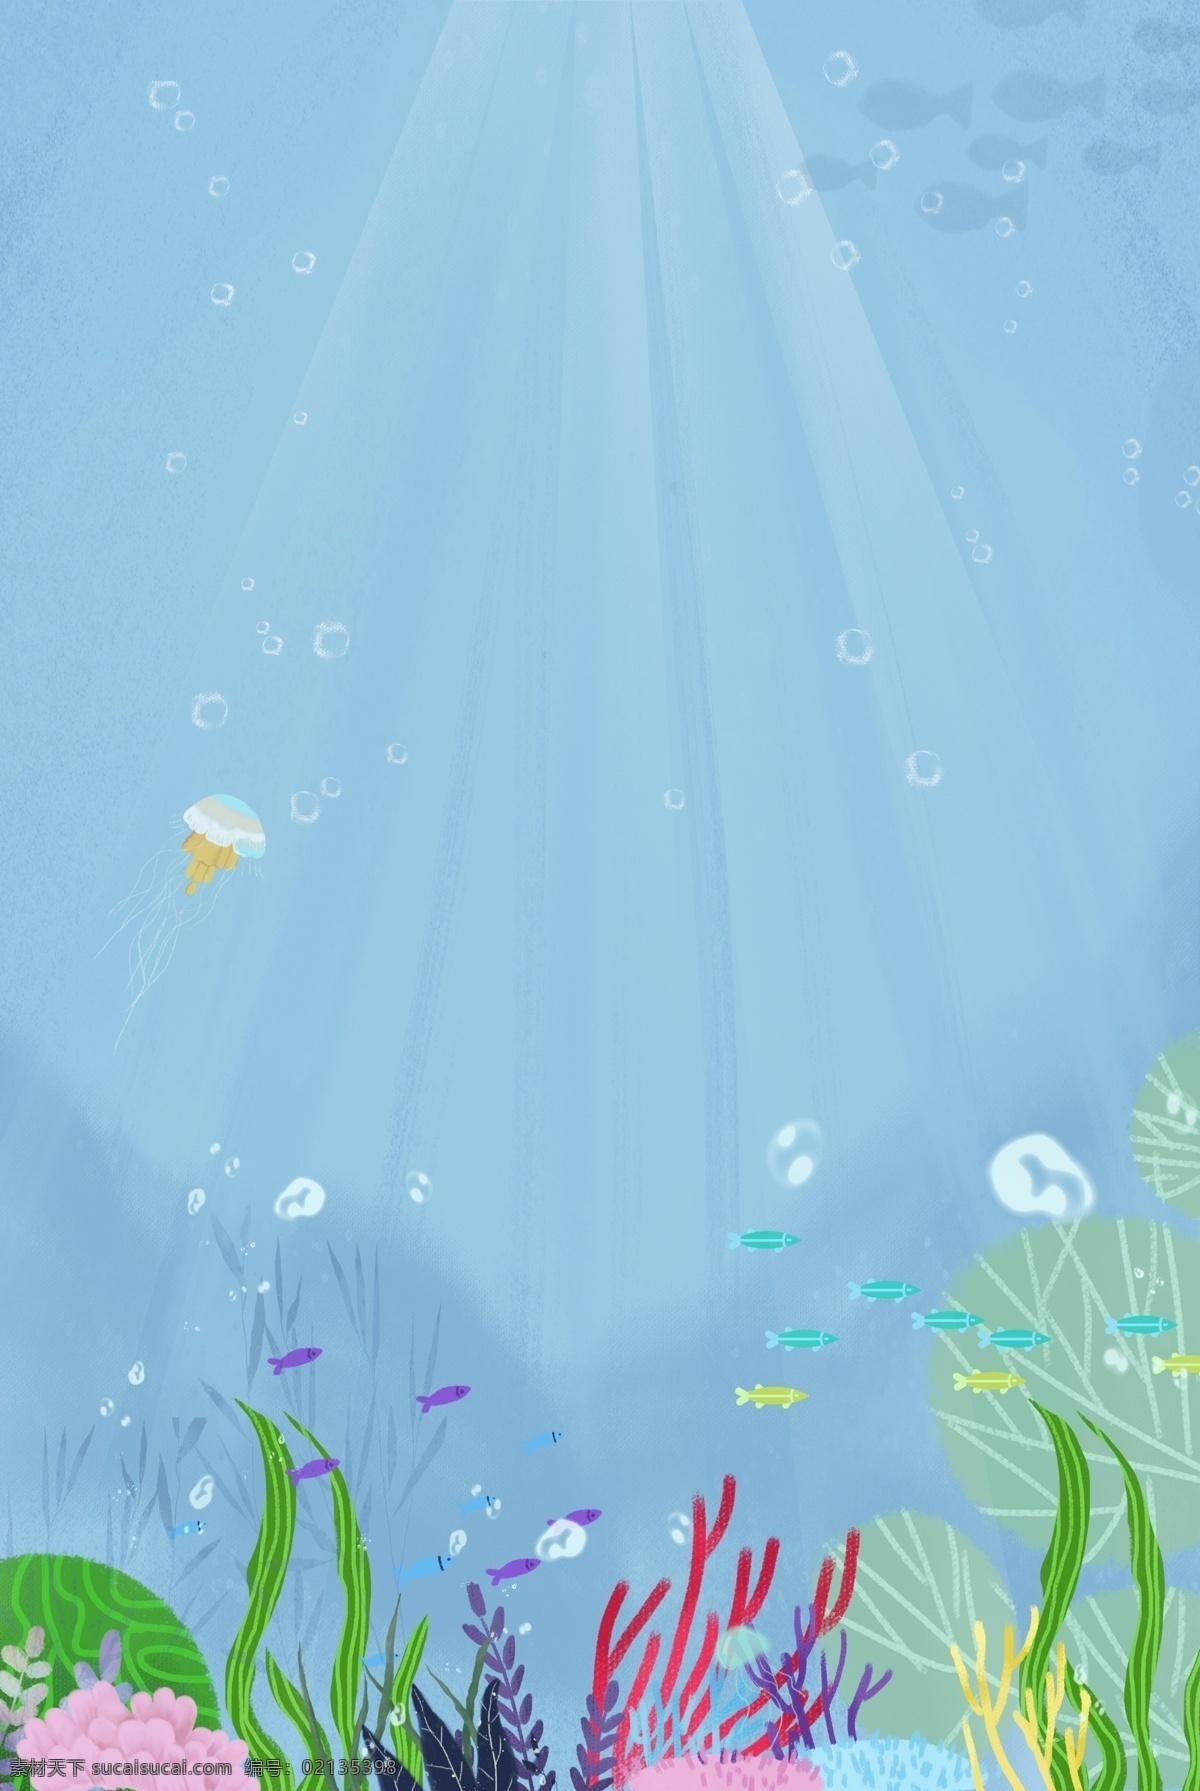 卡通 海洋 沙滩 天空 海岛 背景 陆地 白云 椰子树 海洋动物 海藻 珊瑚 鲸鱼 海底 海星 卡通设计